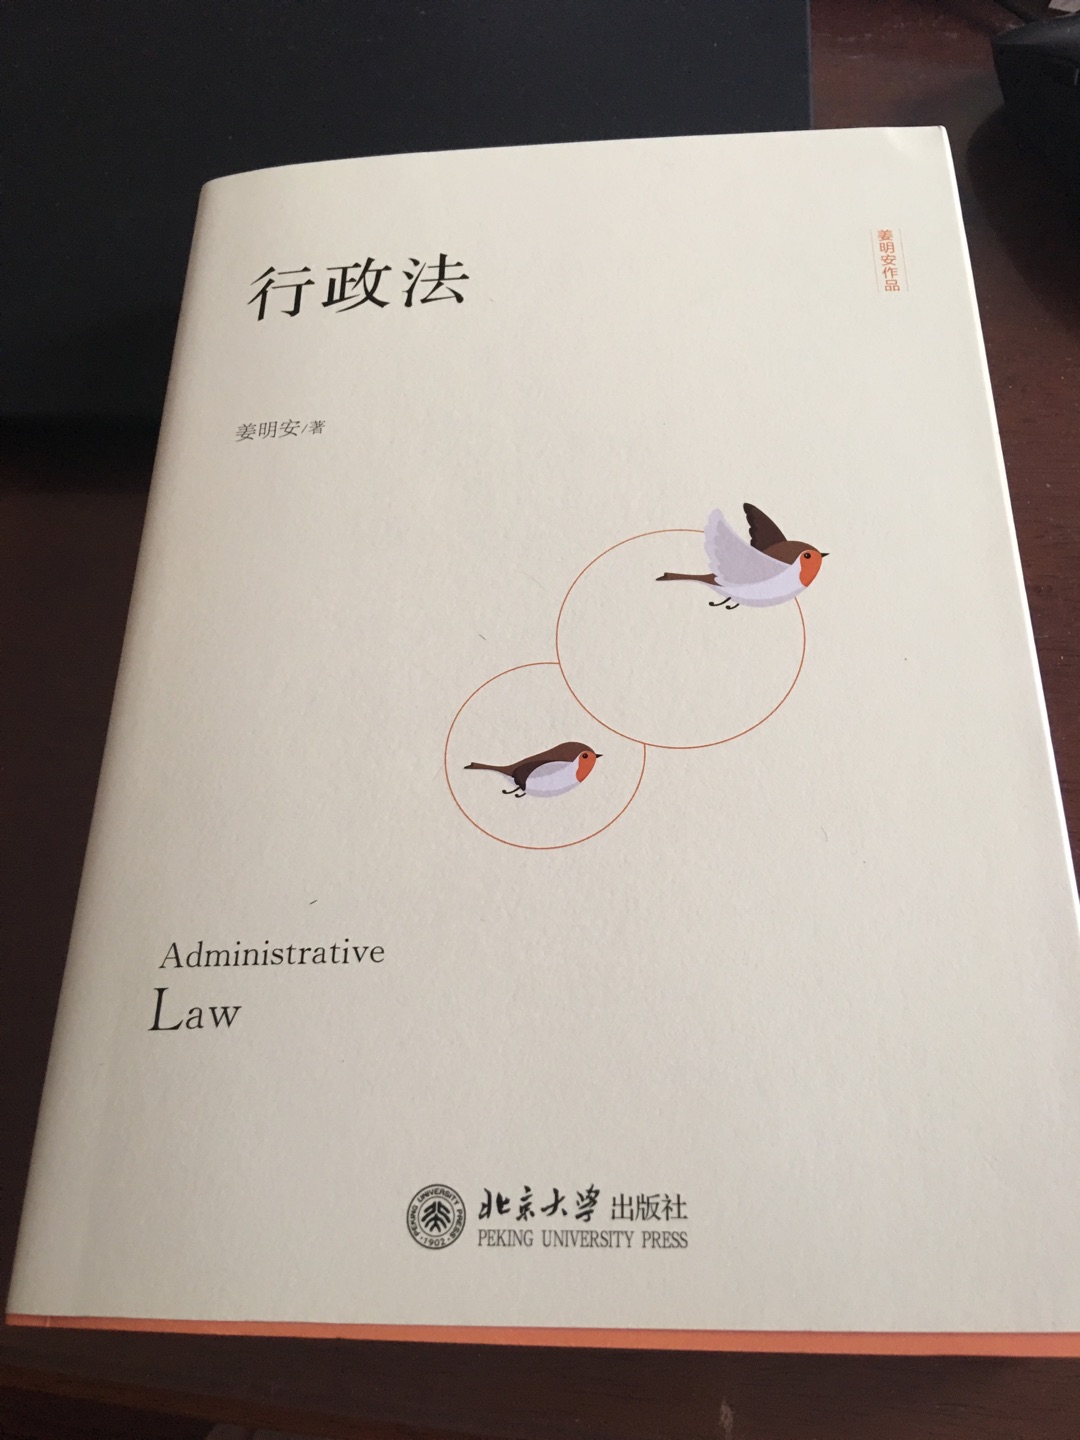 本书全面而系统地阐述了行政法学的基本内容，体例清晰，材料比较丰富，既以中国行政法为主，又兼论了外国的行政法，是一本比较好的关于行政法学书。